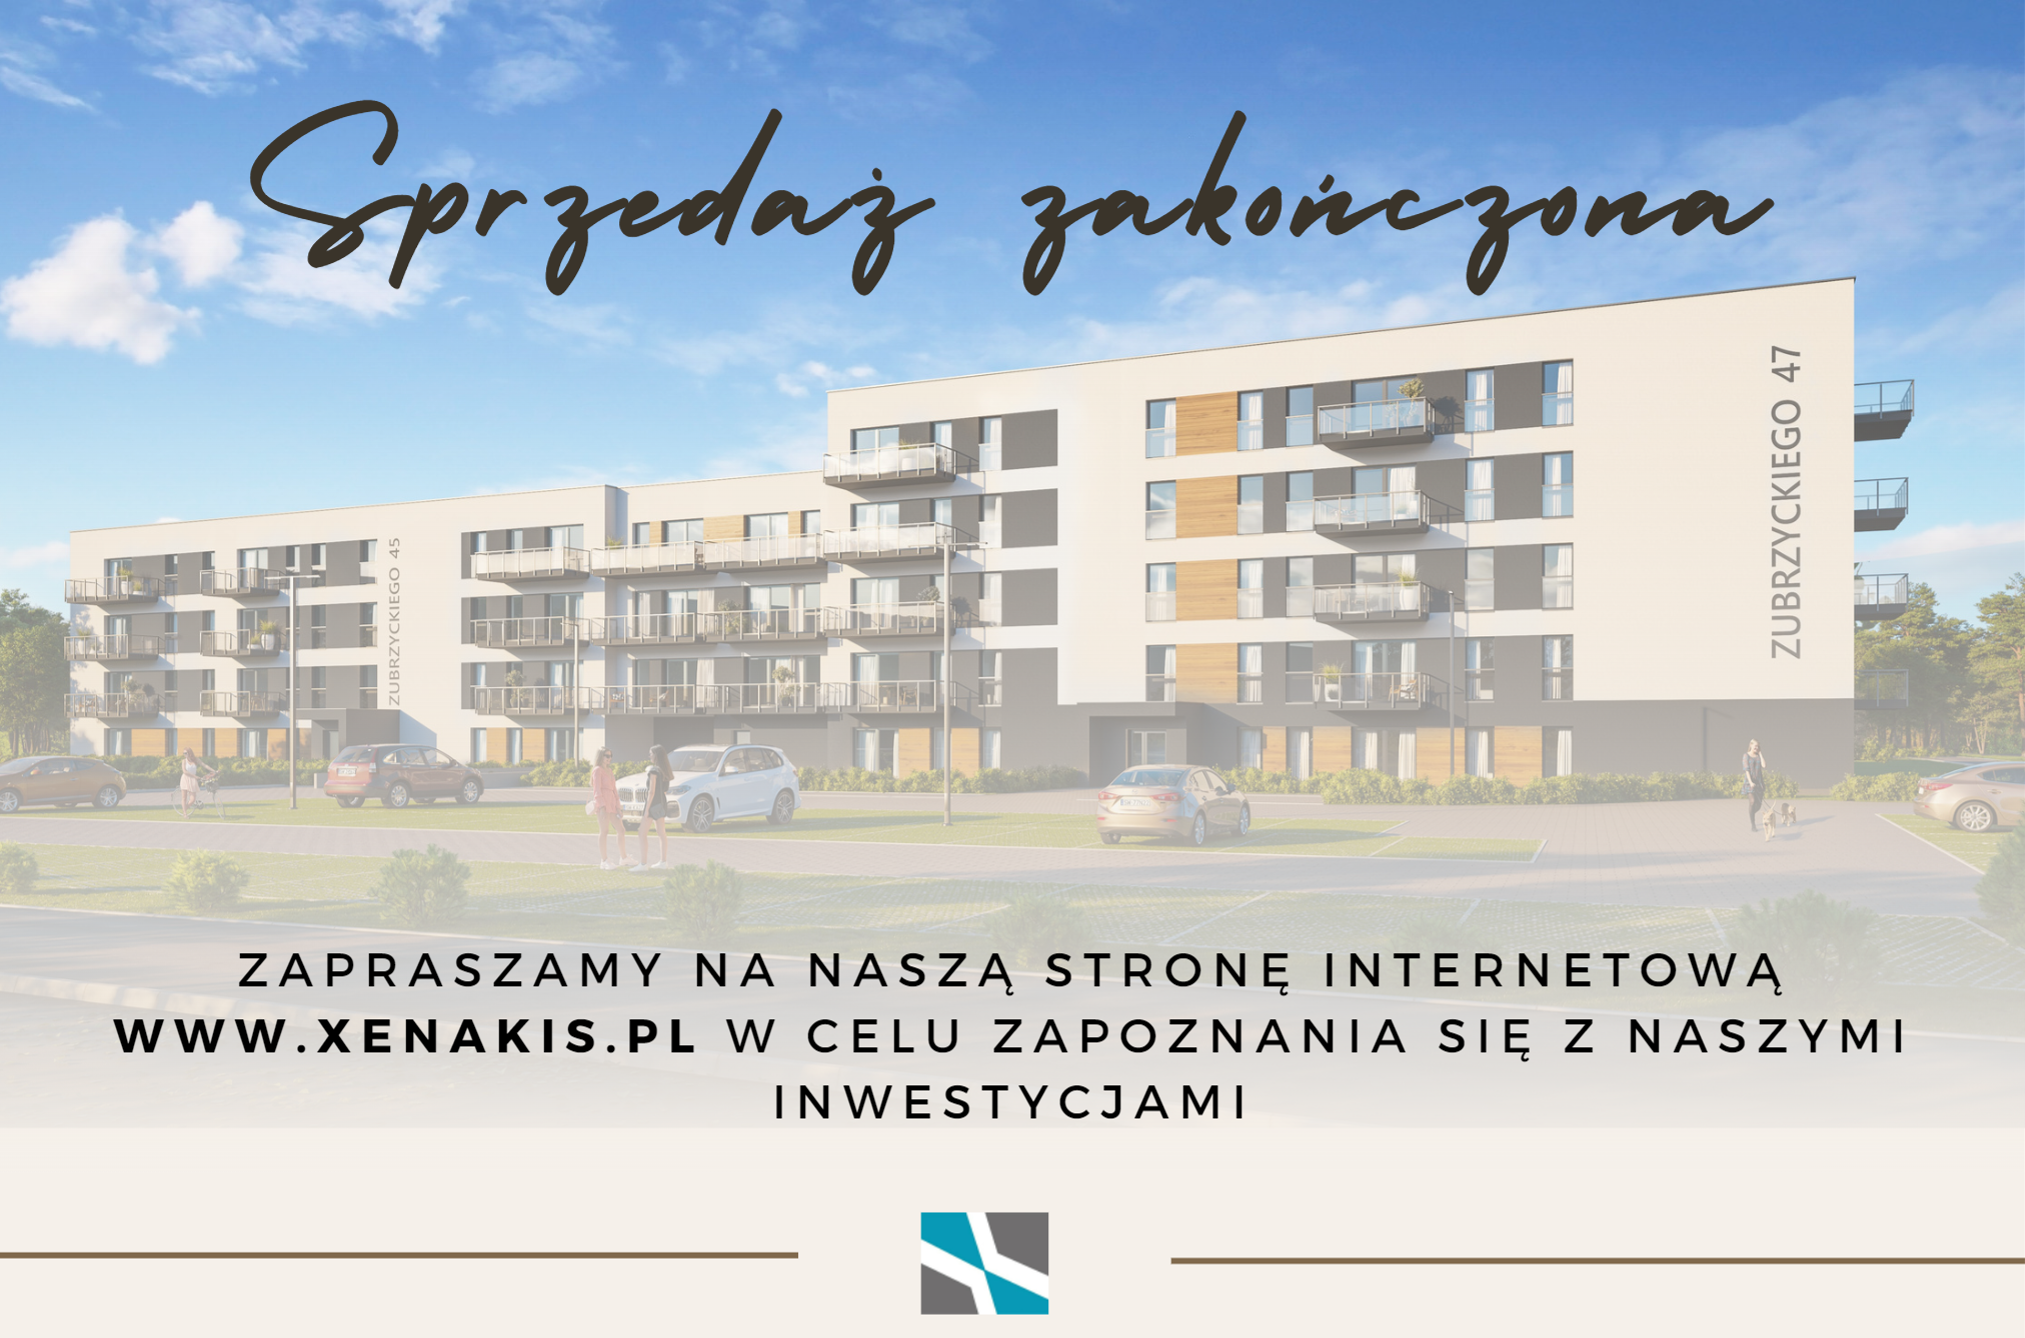 Xenakis Development - z pasją budujemy dla Śląska